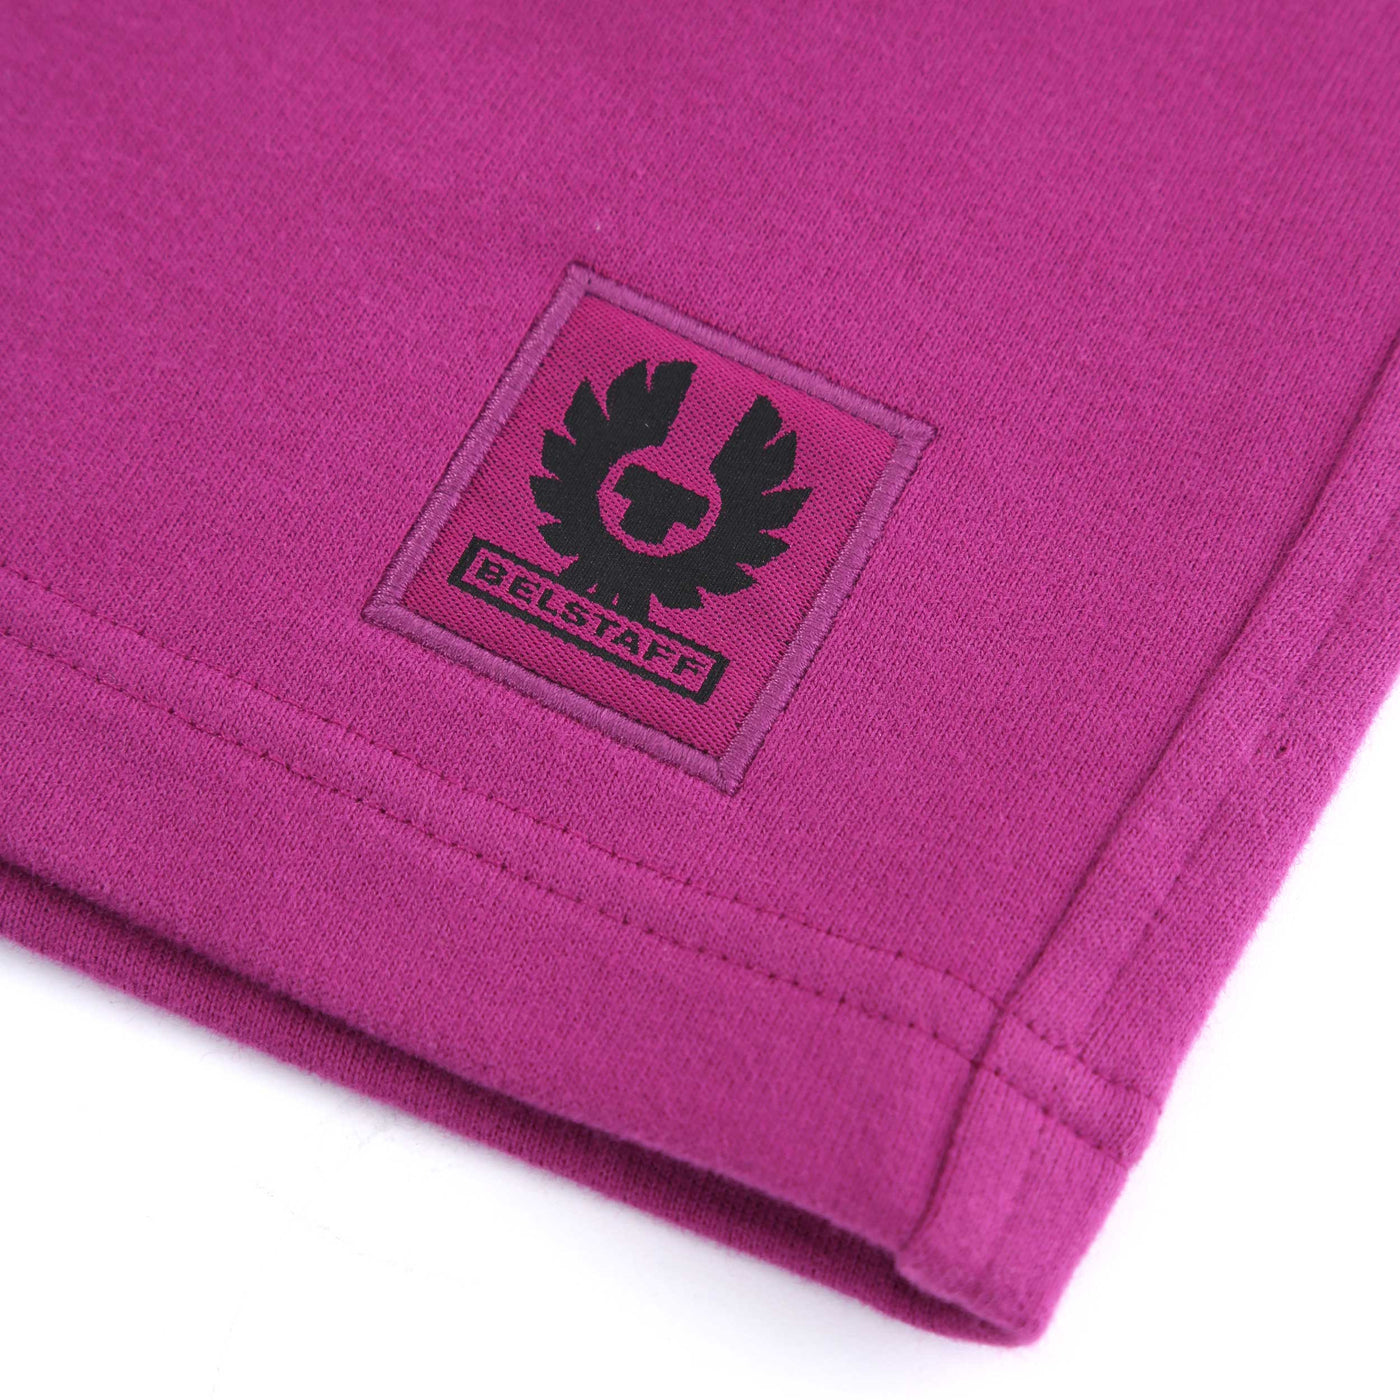 Belstaff Sweat Short in Bright Purple Logo